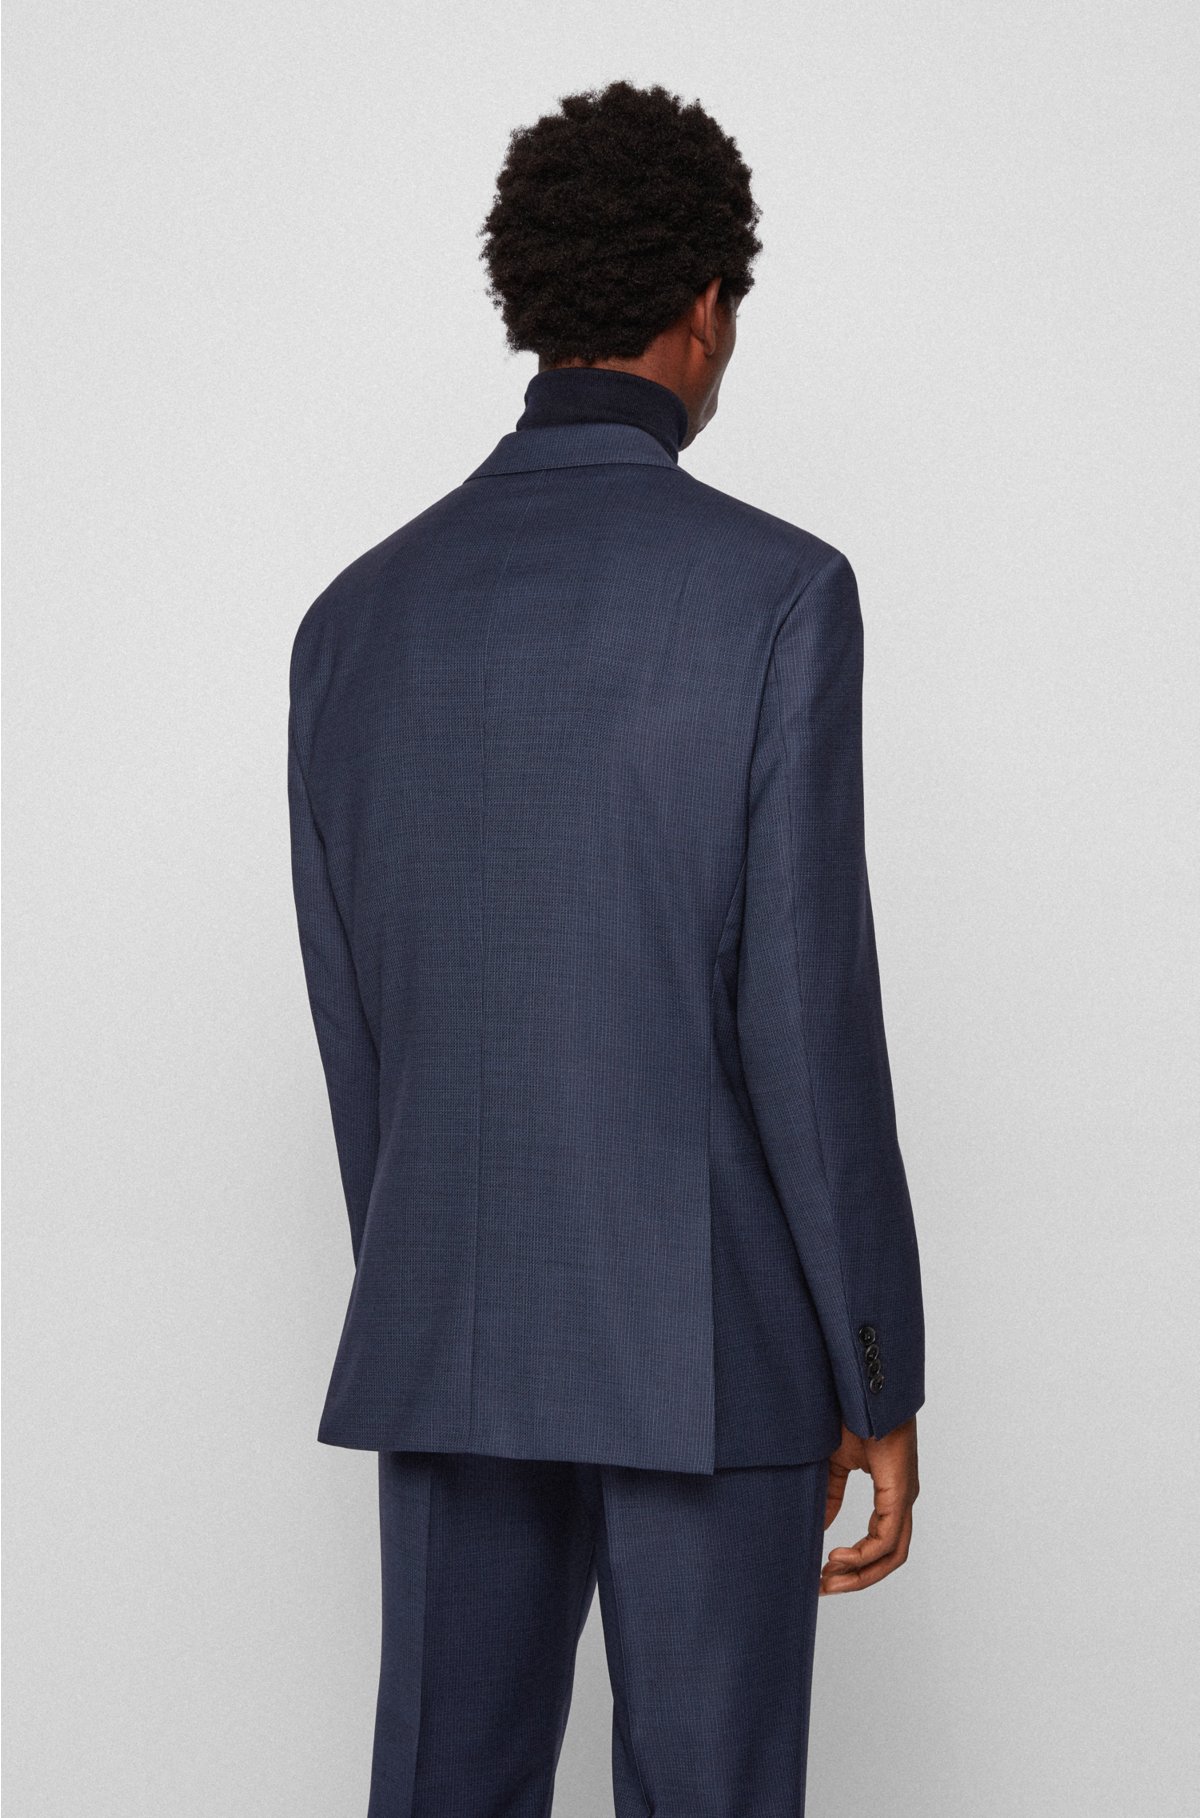 BOSS - Regular-fit suit in micro-patterned virgin-wool serge